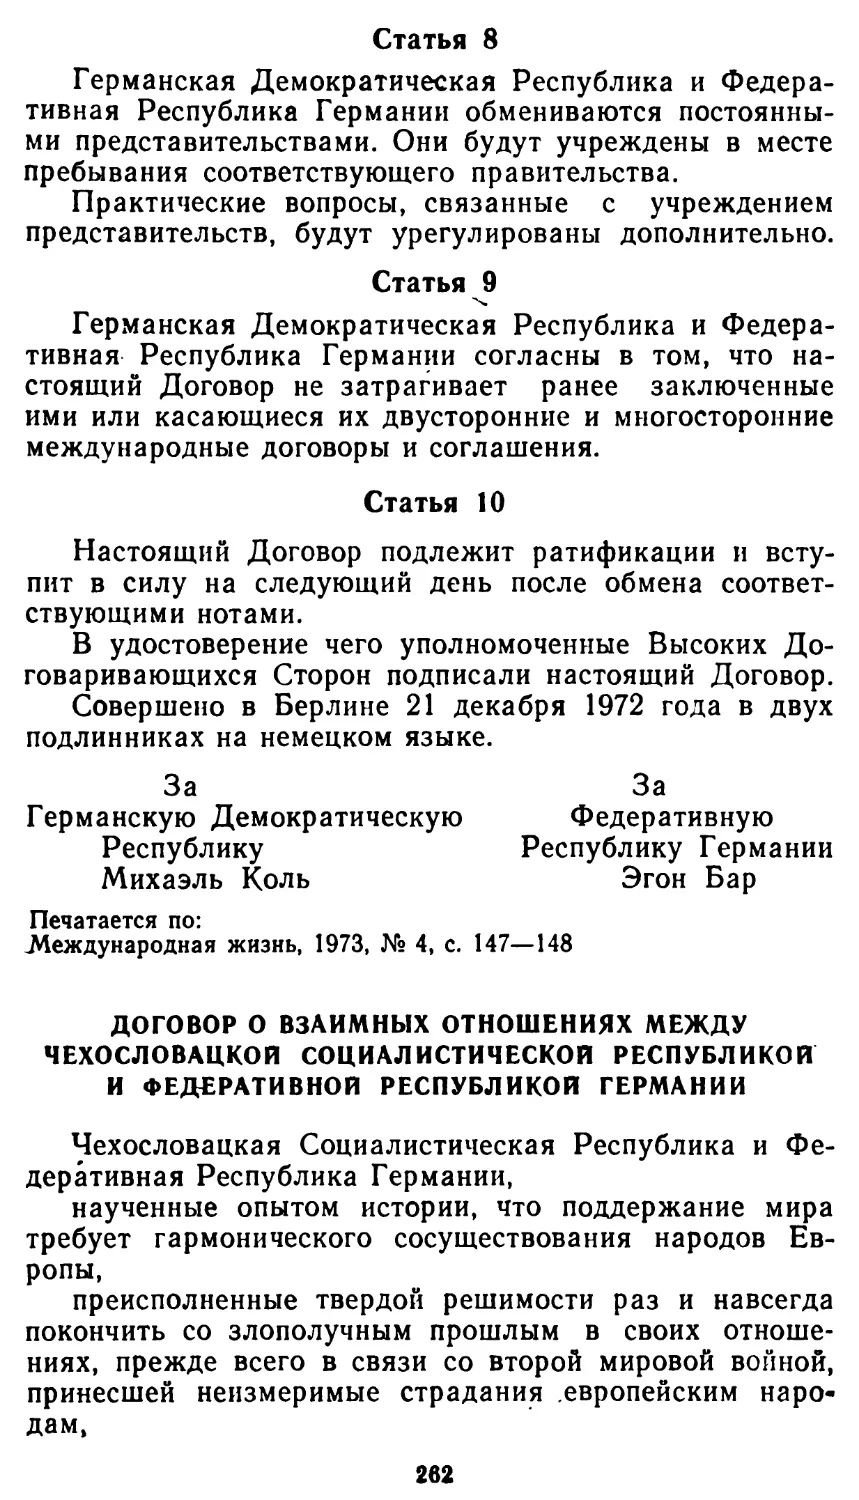 Договор о взаимных отношениях между Чехословацкой Социалистической Республикой и Федеративной Республикой Германии